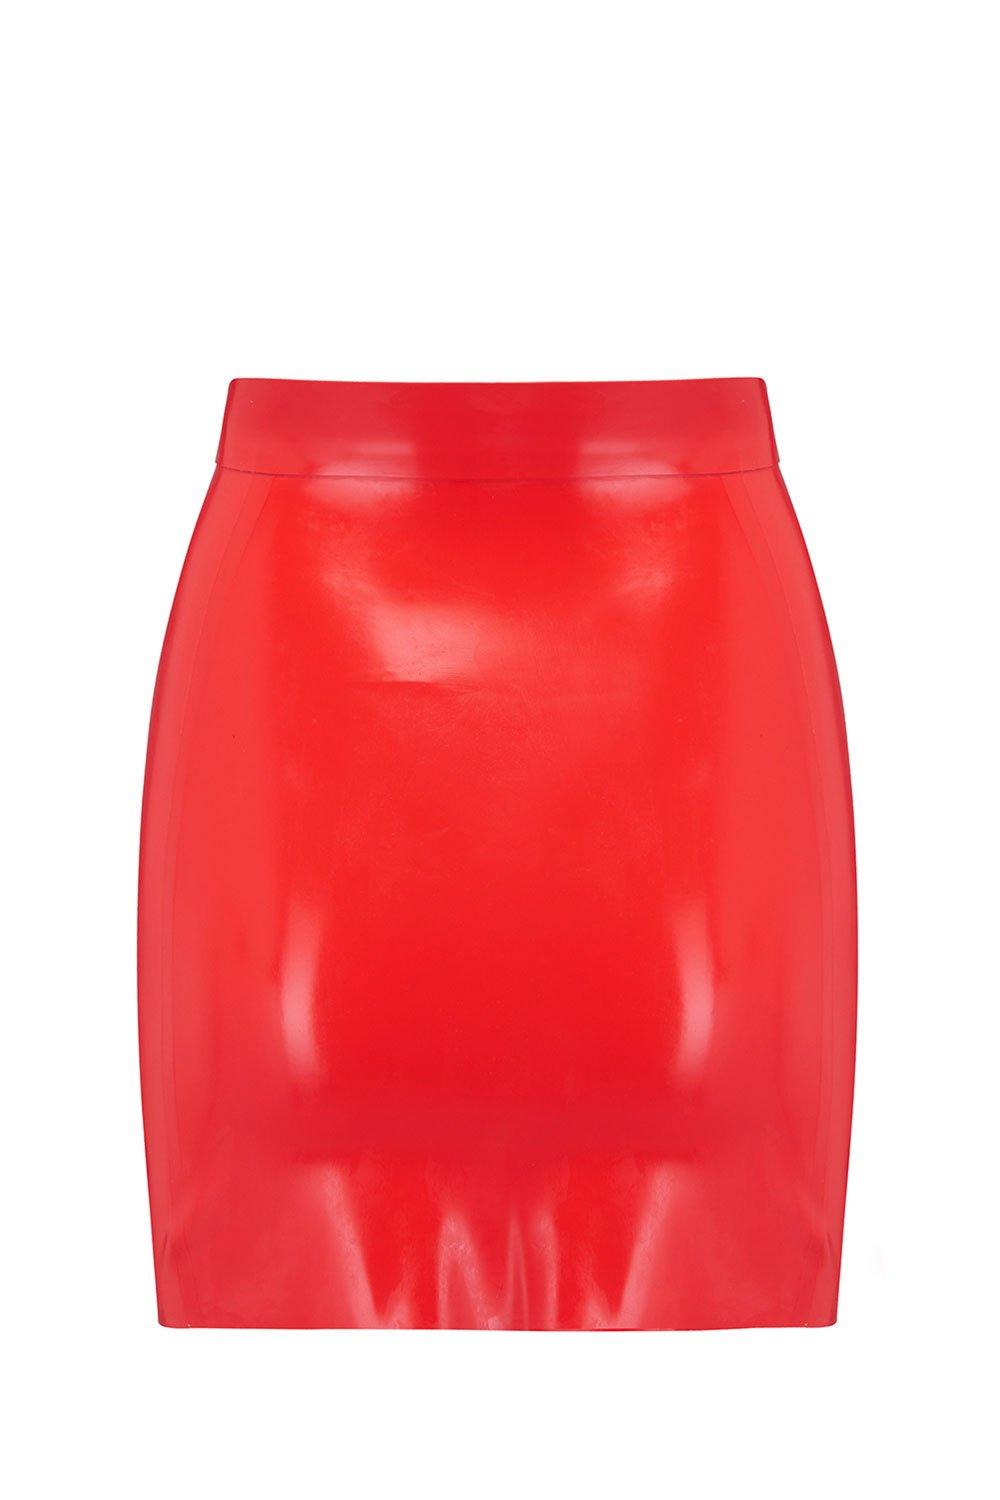 Scarlet Red Latex Mini Skirt Bespoke Fetish Clothing Elissa Poppy Darkest Fox